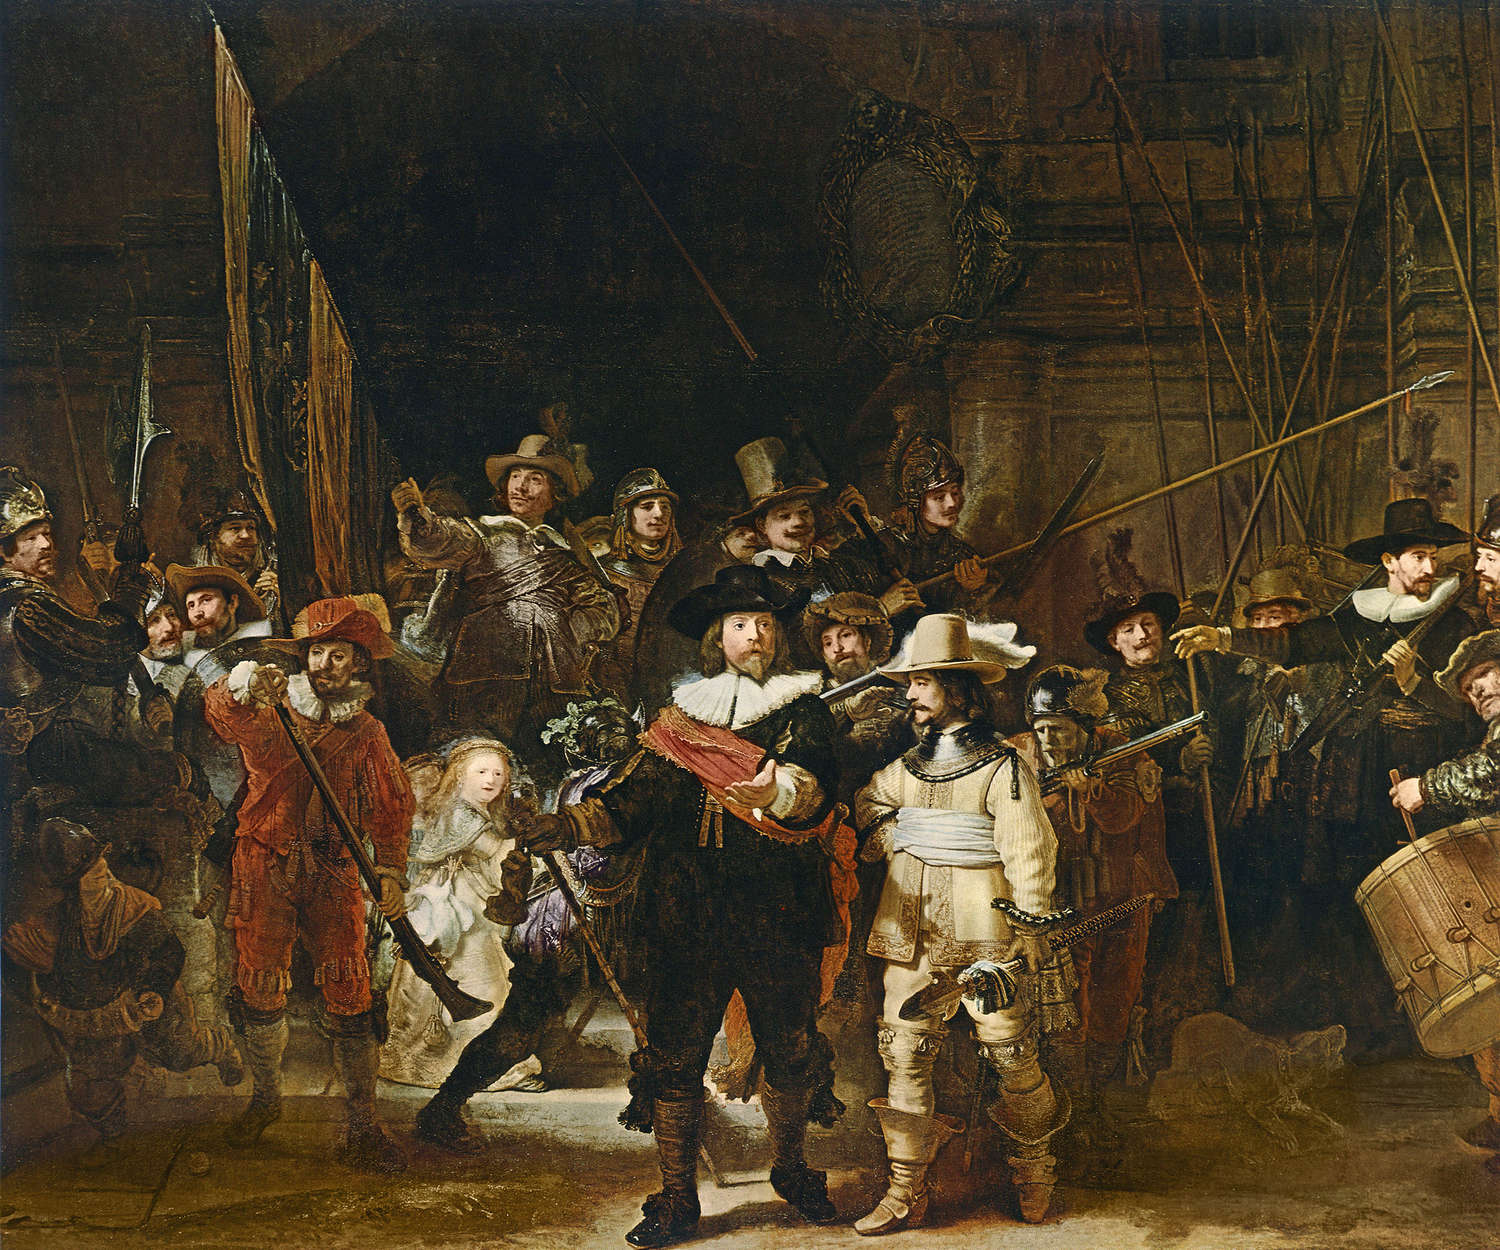             Papier peint panoramique "La Ronde de nuit" de Rembrandt van Rijn
        